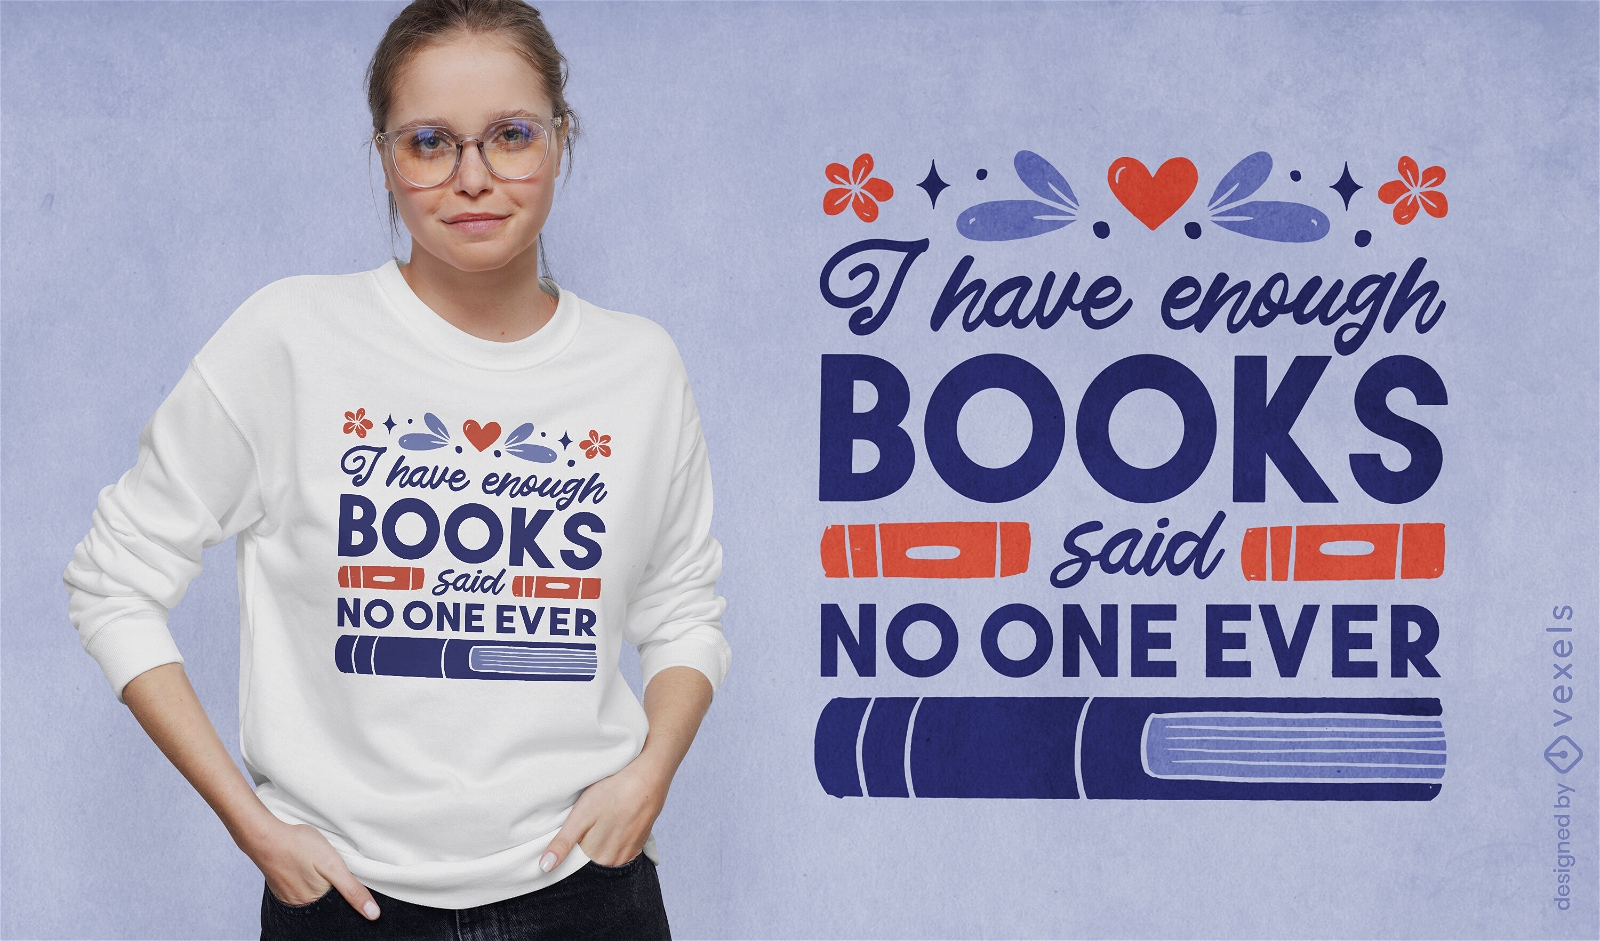 Livros suficientes citam design de camiseta